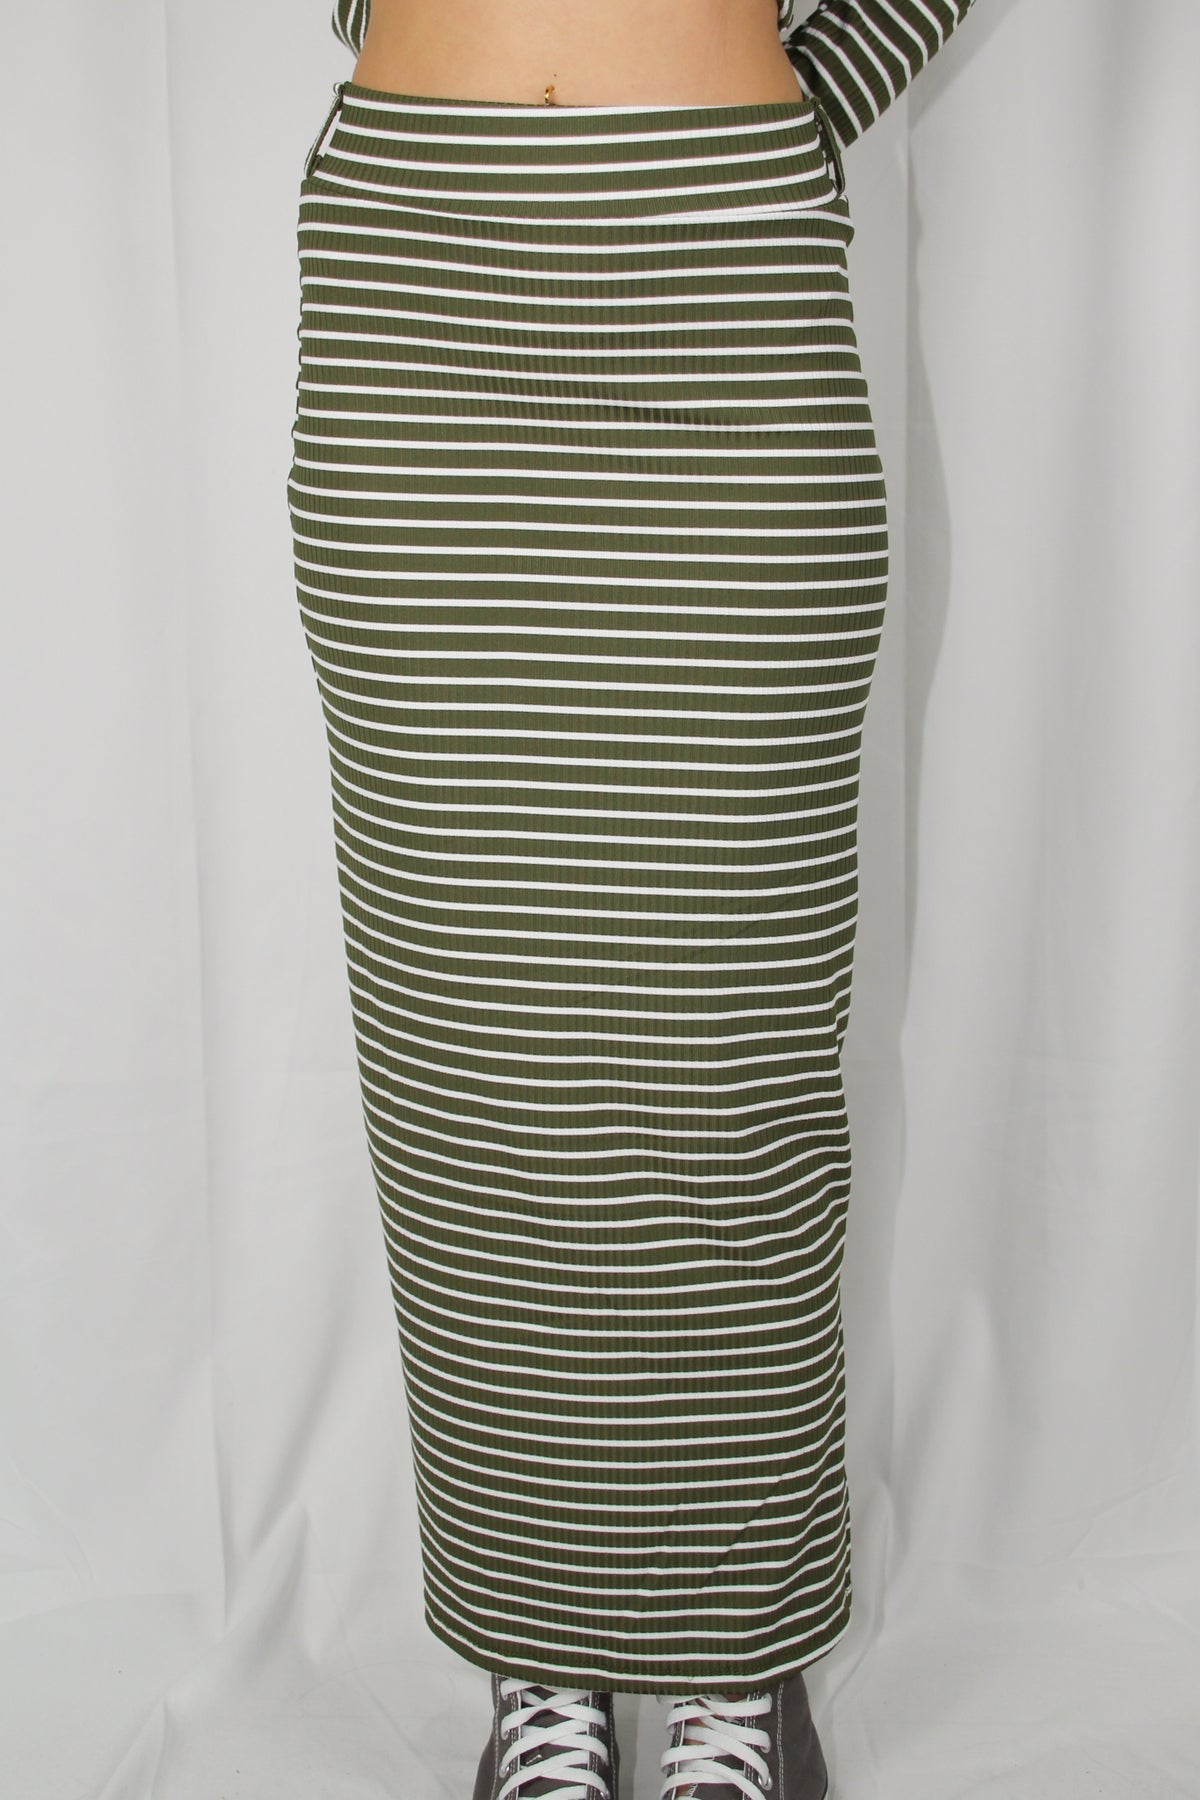 חצאית מקסי פסים עם שסע בצבע ירוק לנשים-Daniel-1-נאקו